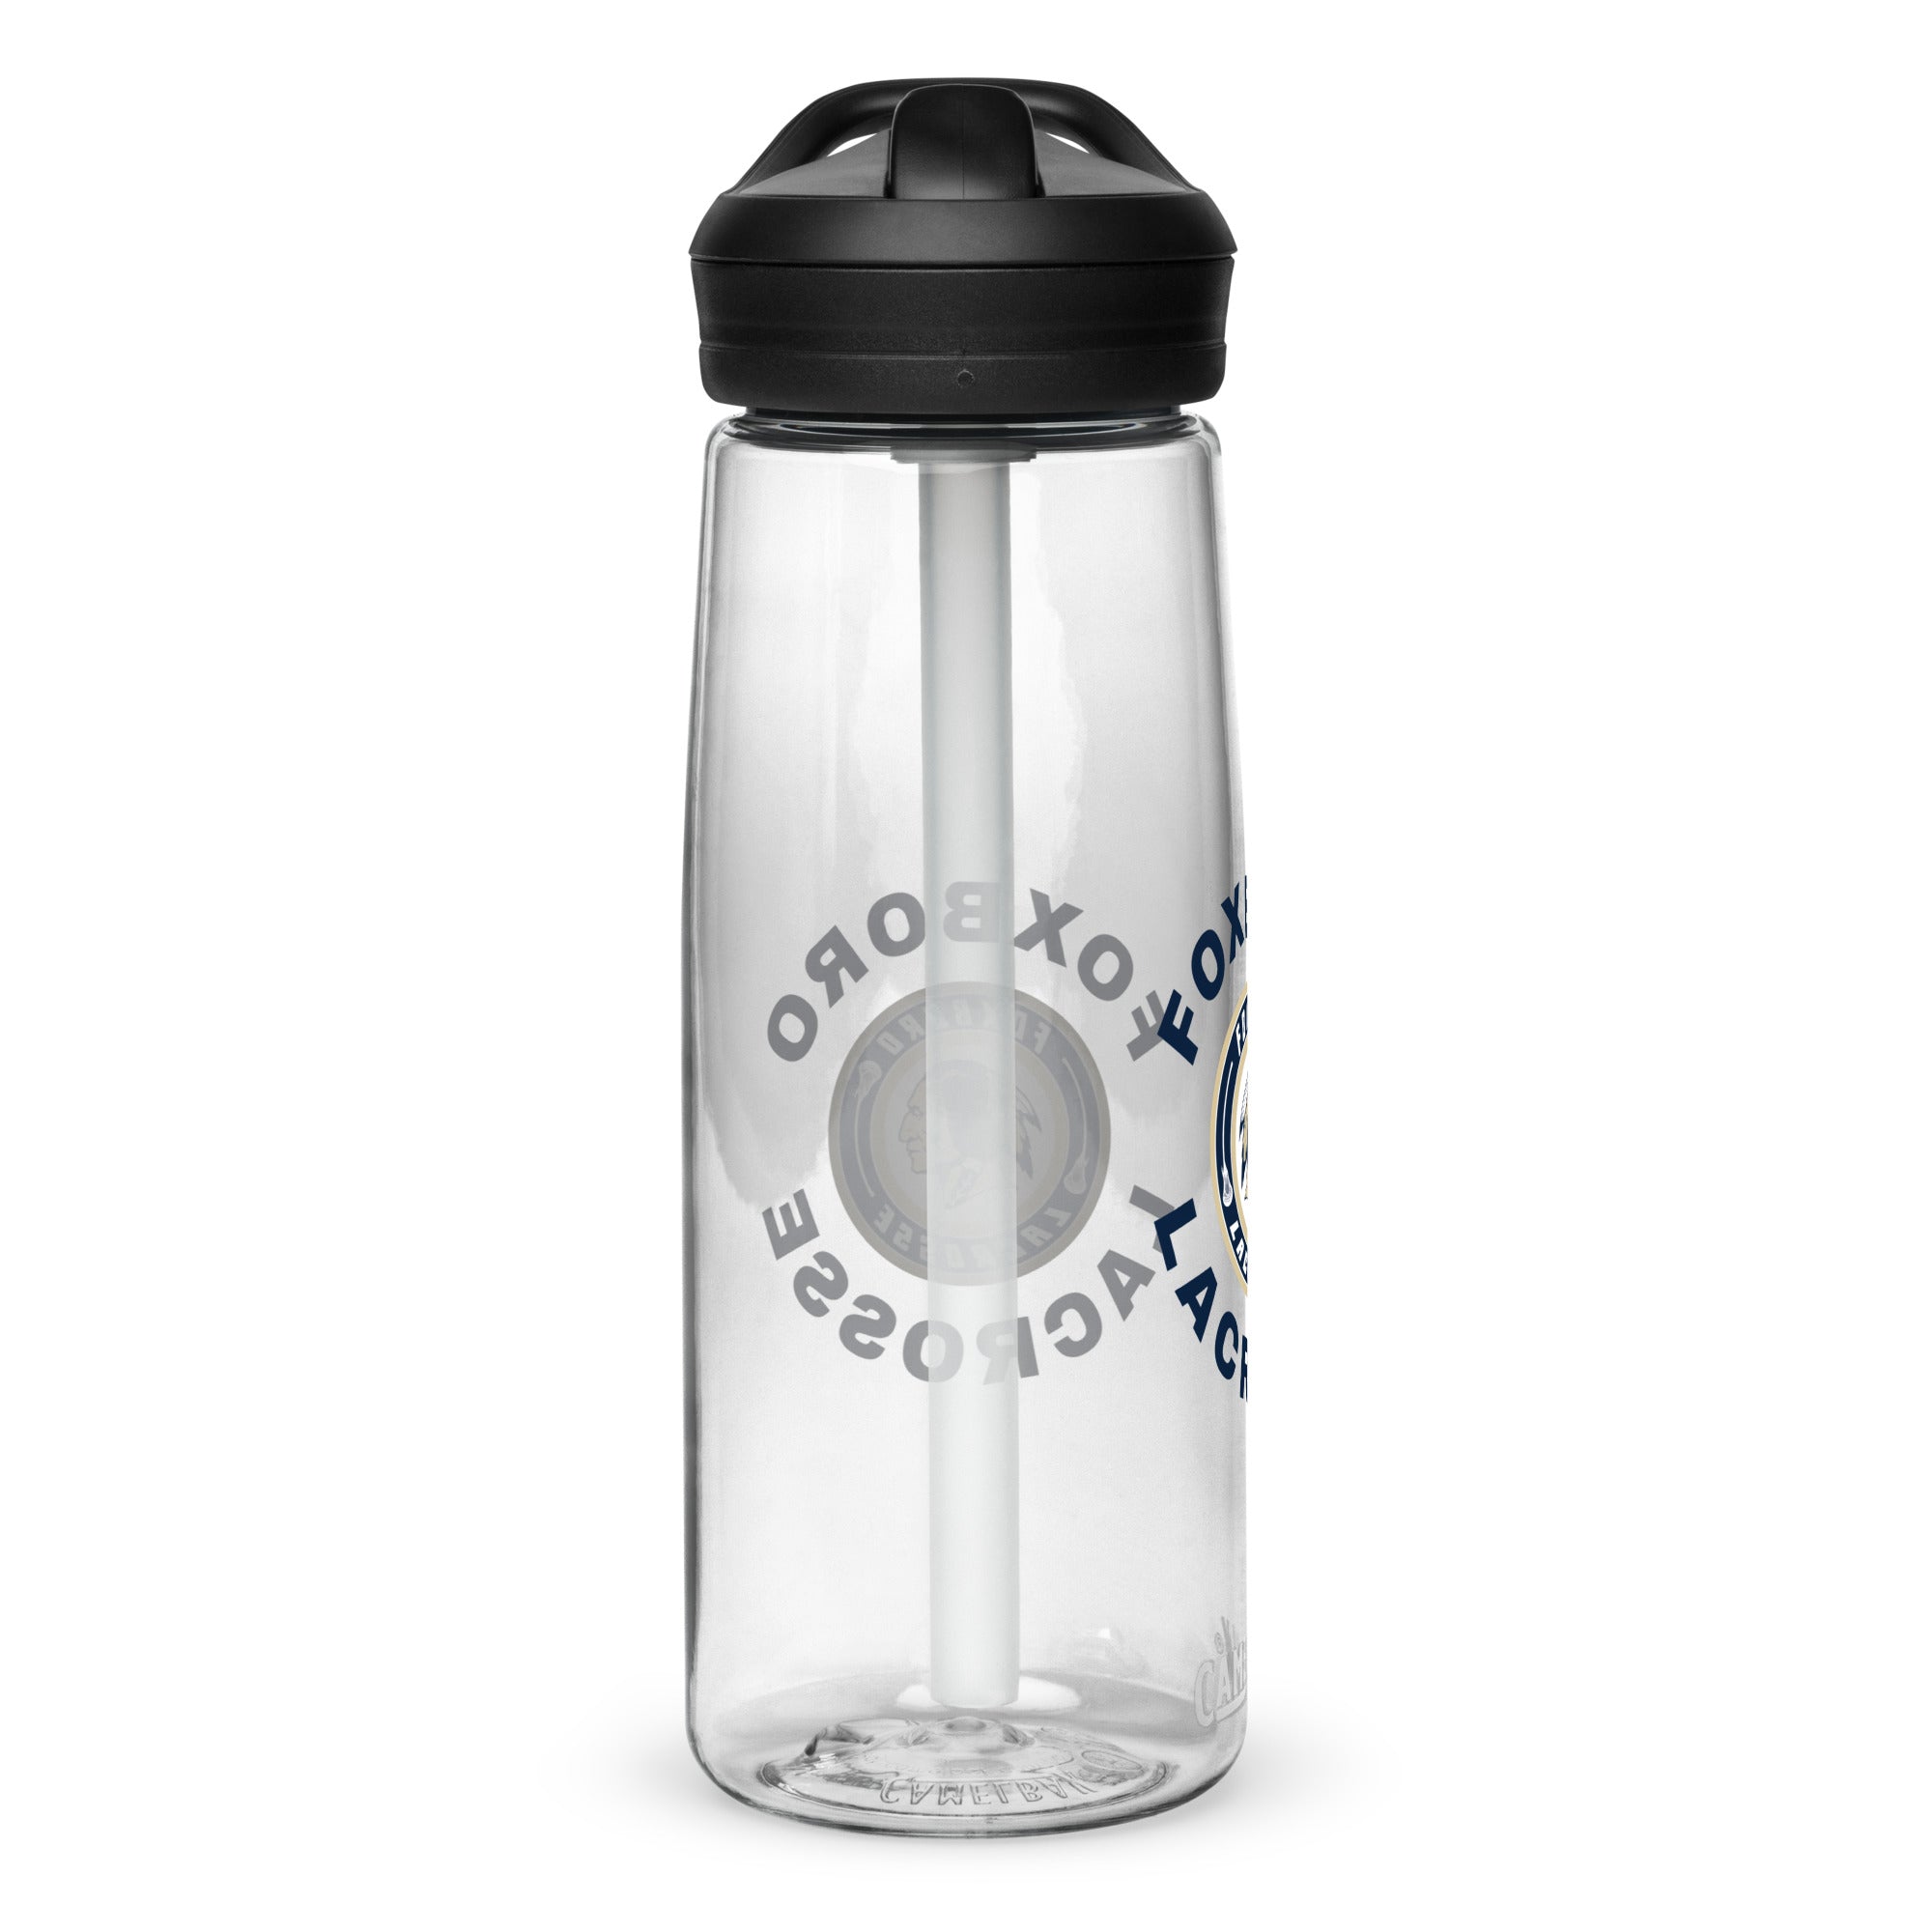 Foxboro Sports water bottle